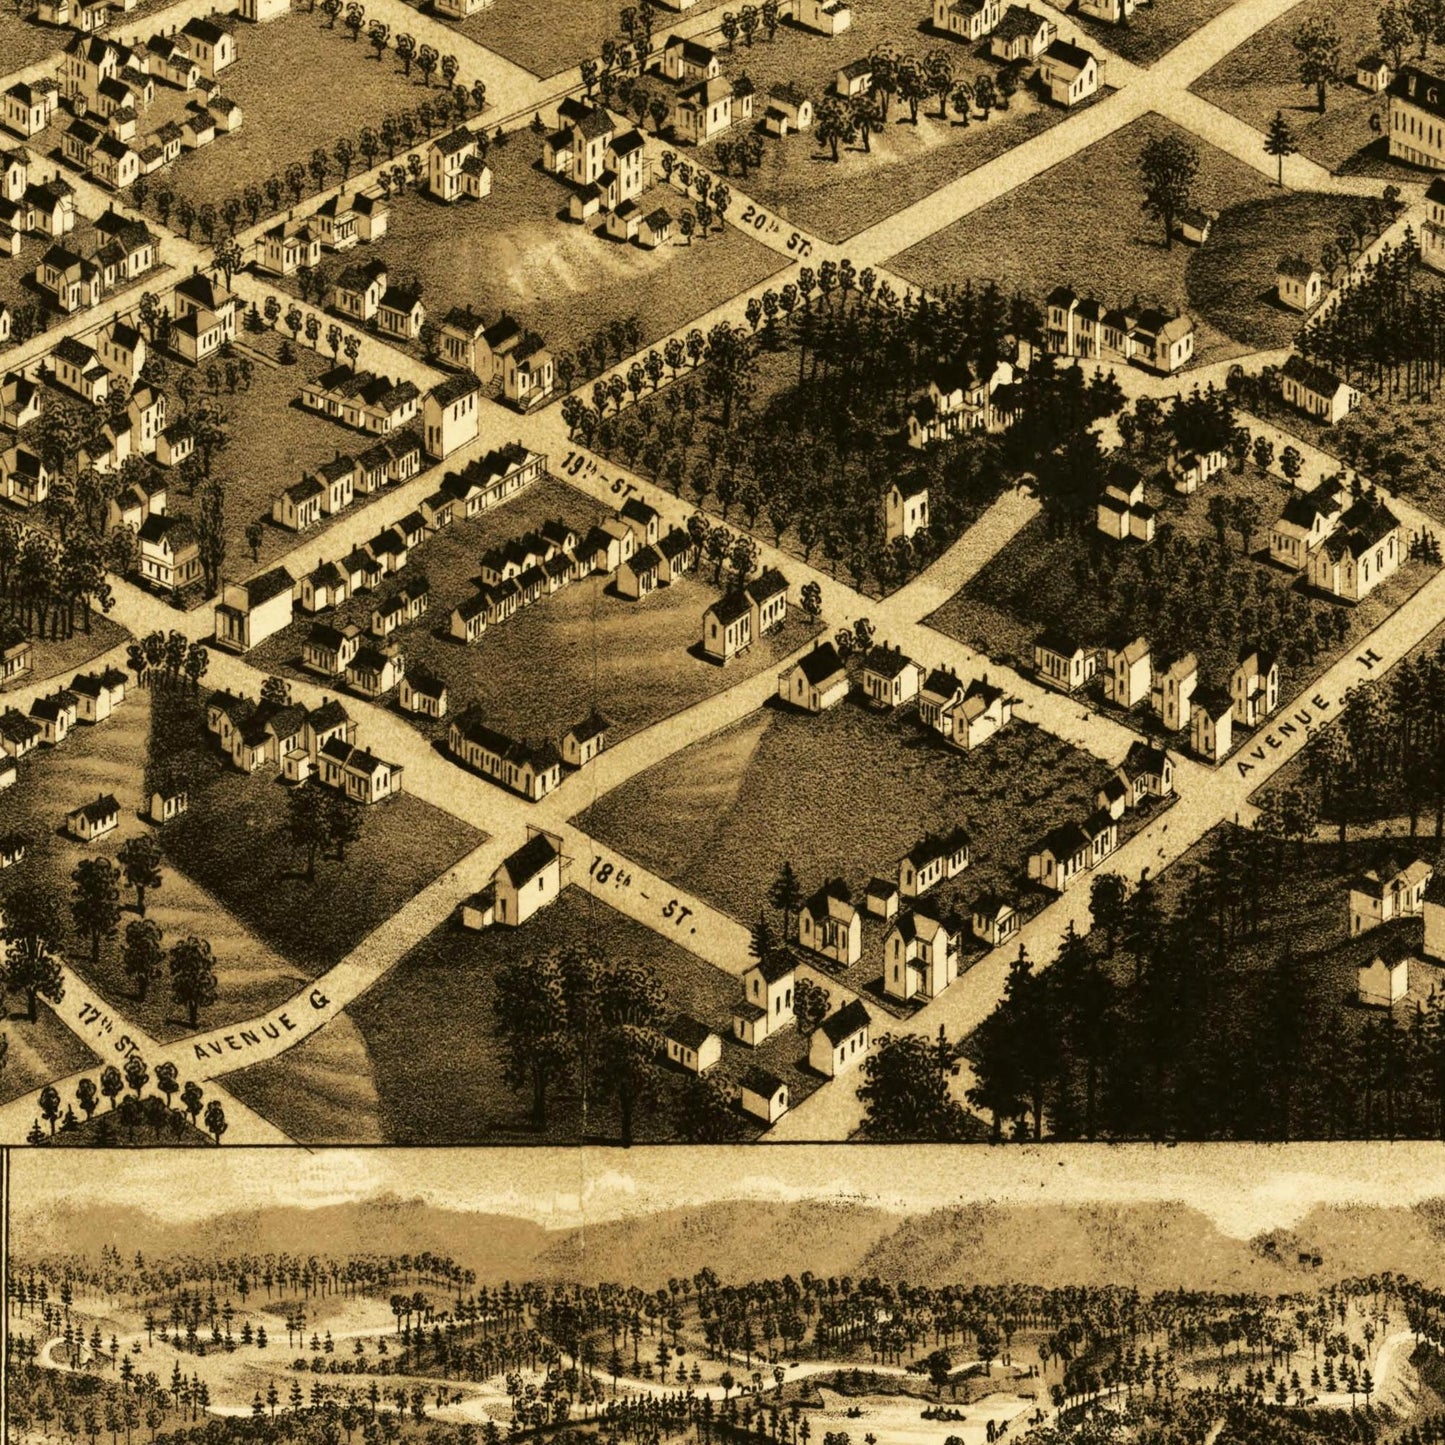 Historische Stadtansicht Birmingham um 1885